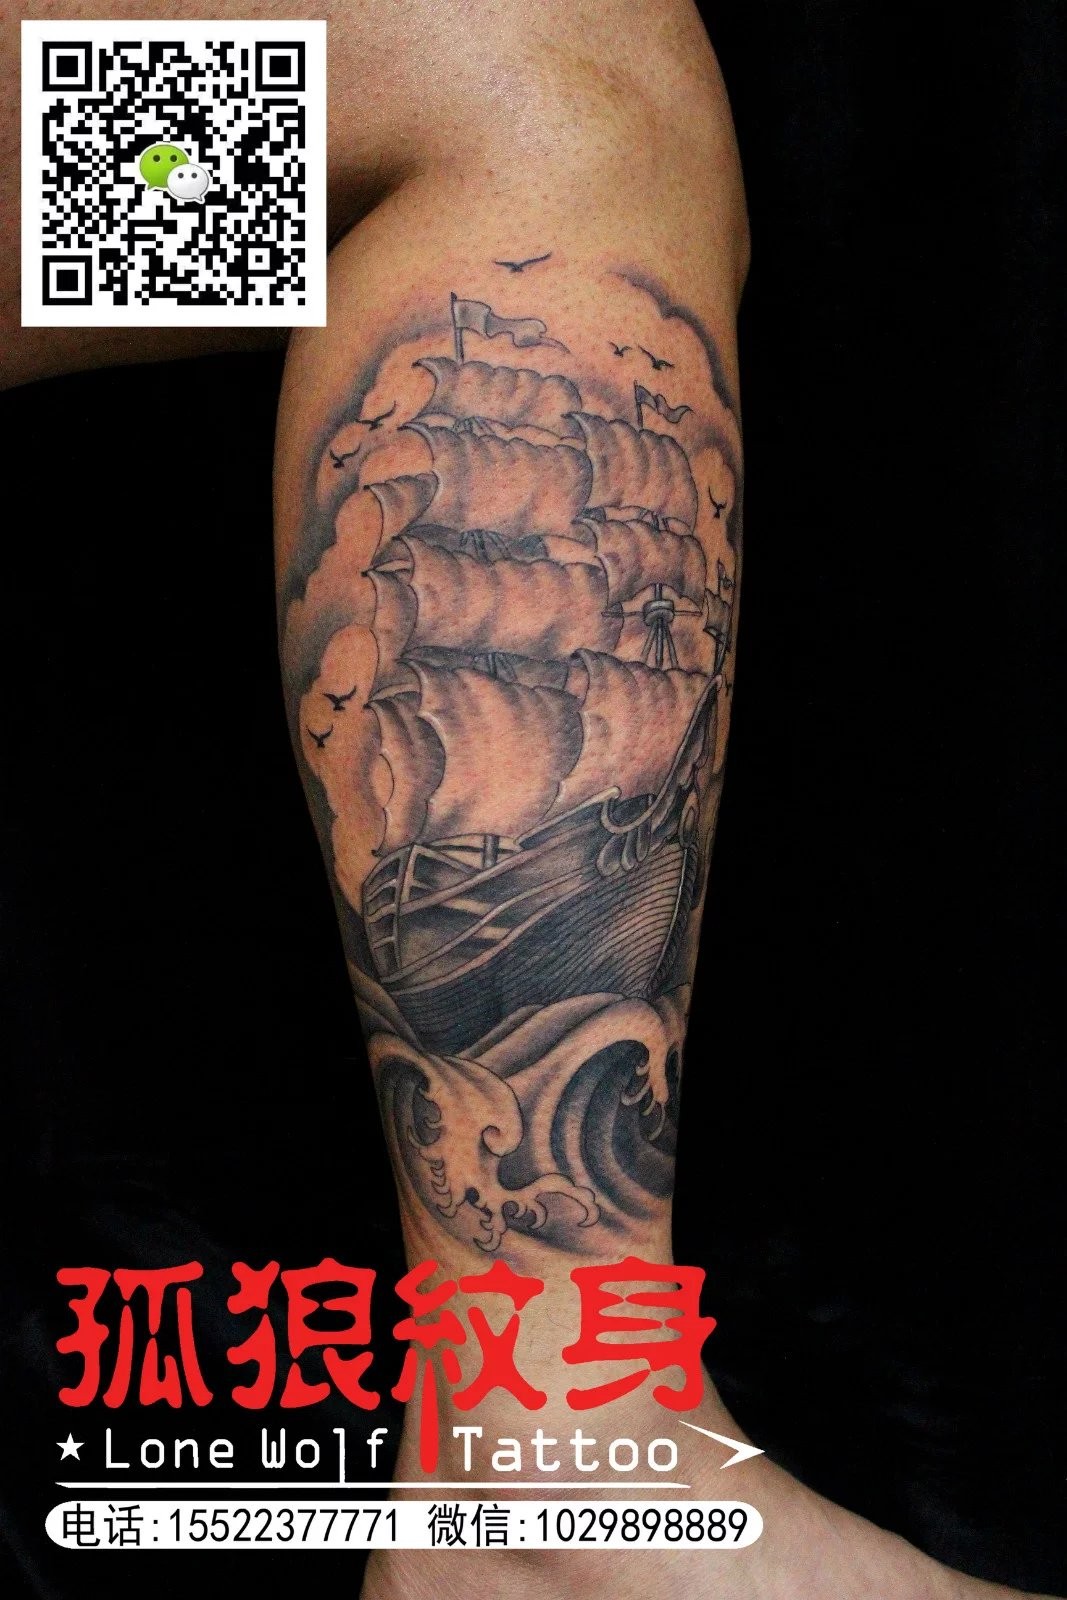 小腿外侧帆船纹身 宝坻孤狼纹身工作室作品 天津